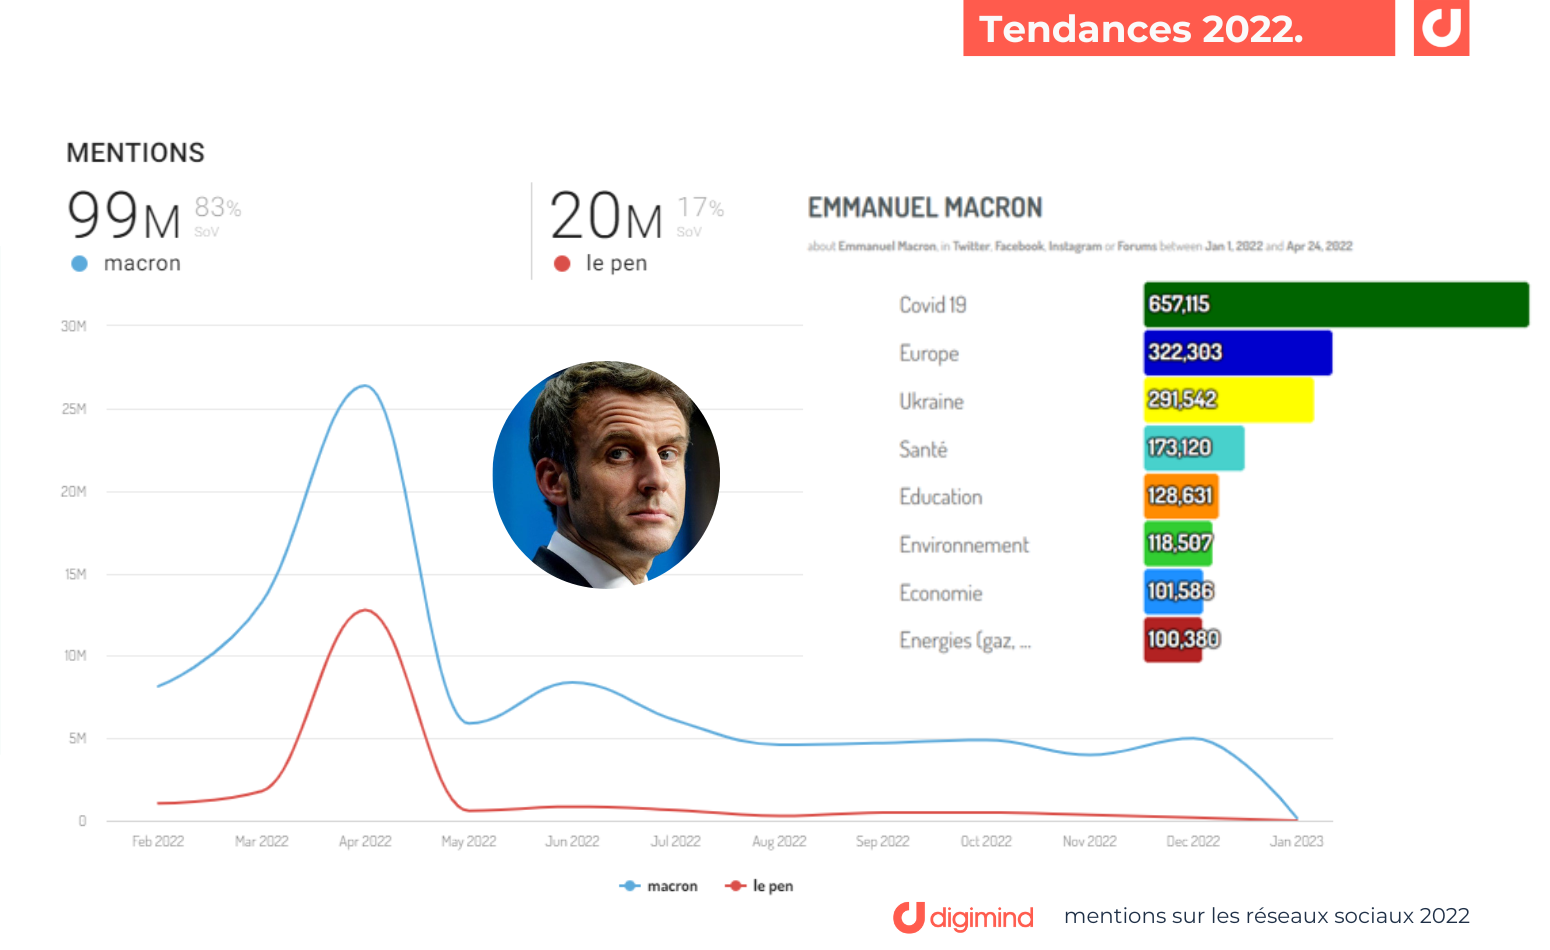 Les mentions sur Emmanuel Macron vs Marine le Pen sur les médias sociaux. Les sujets du candidat les plus évoqués.